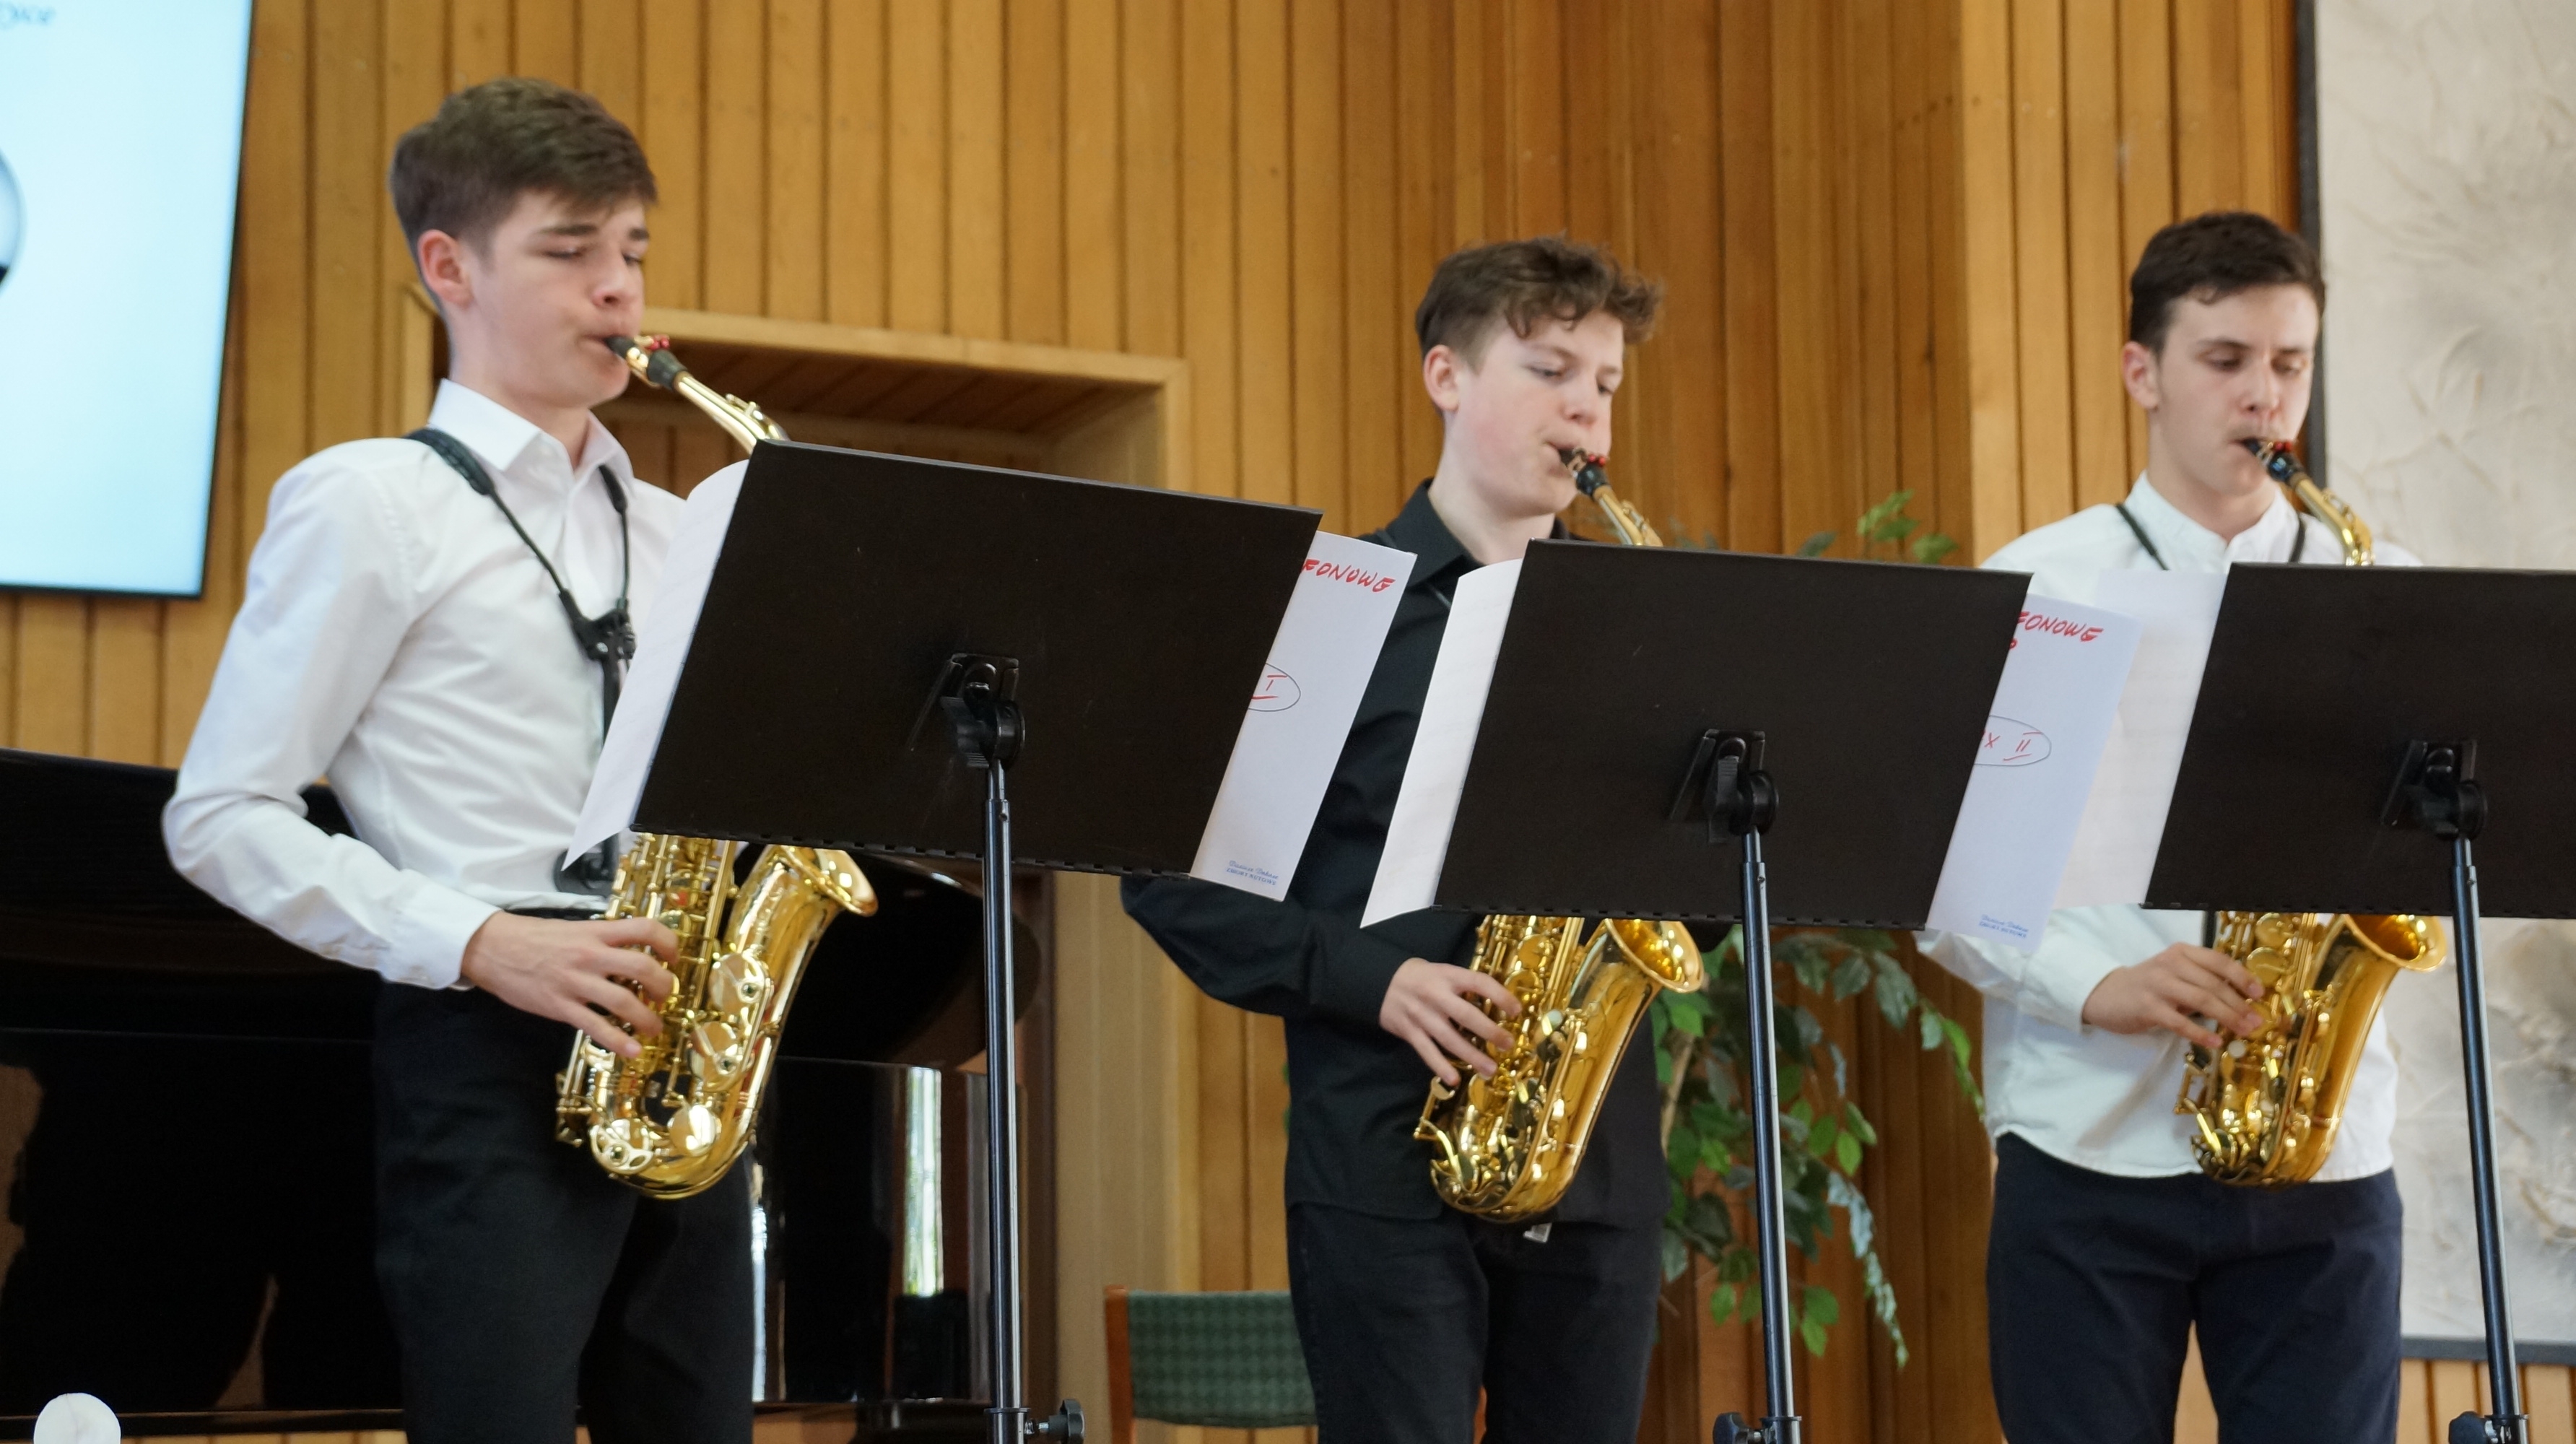 Troje uczniów ubranych na galowo grających na saksofonach w auli Państwowej szkoły Muzycznej